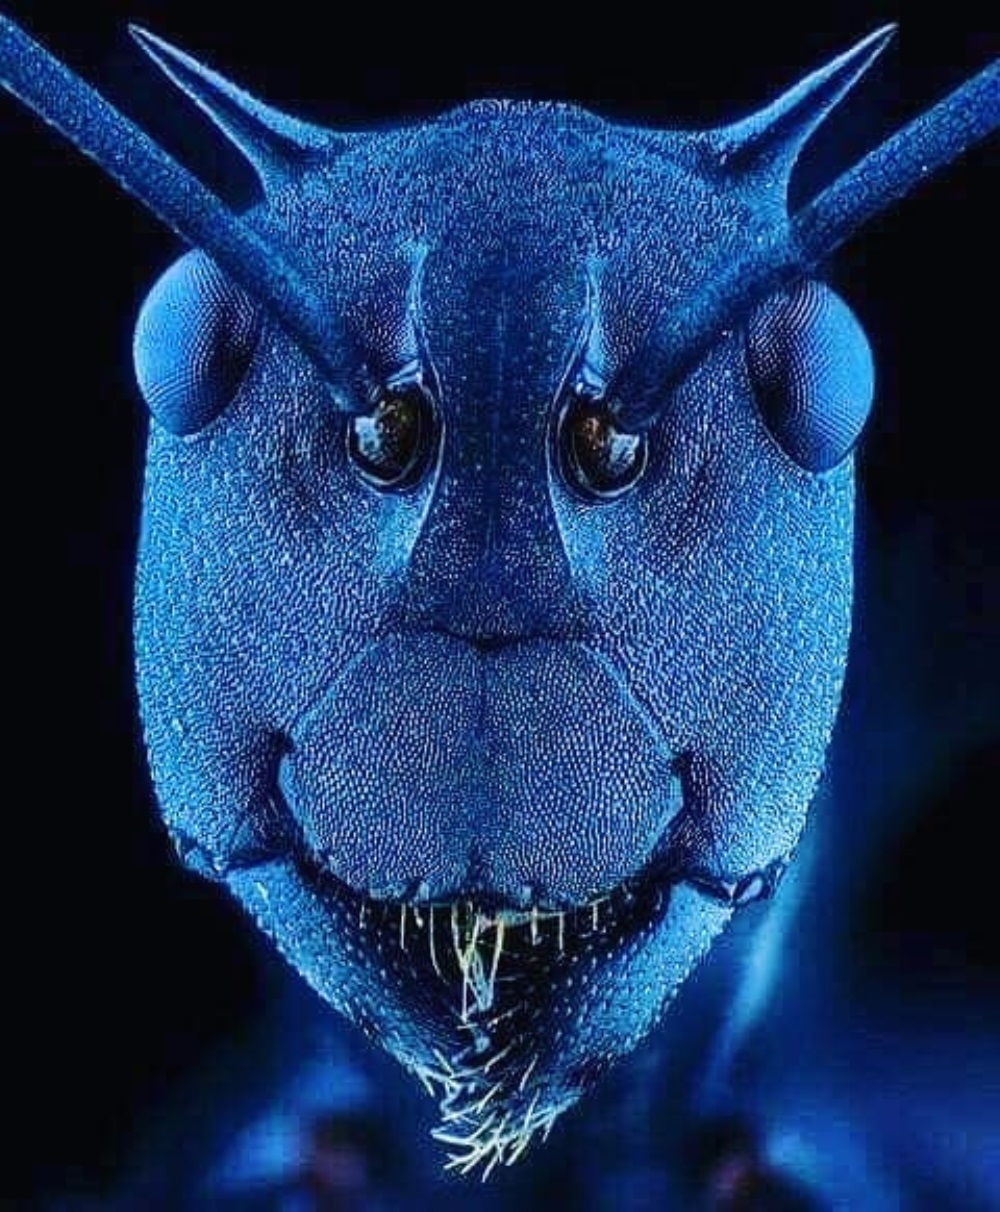 Zwykła mrówka, jakiej nigdy wcześniej nie widzieliśmy